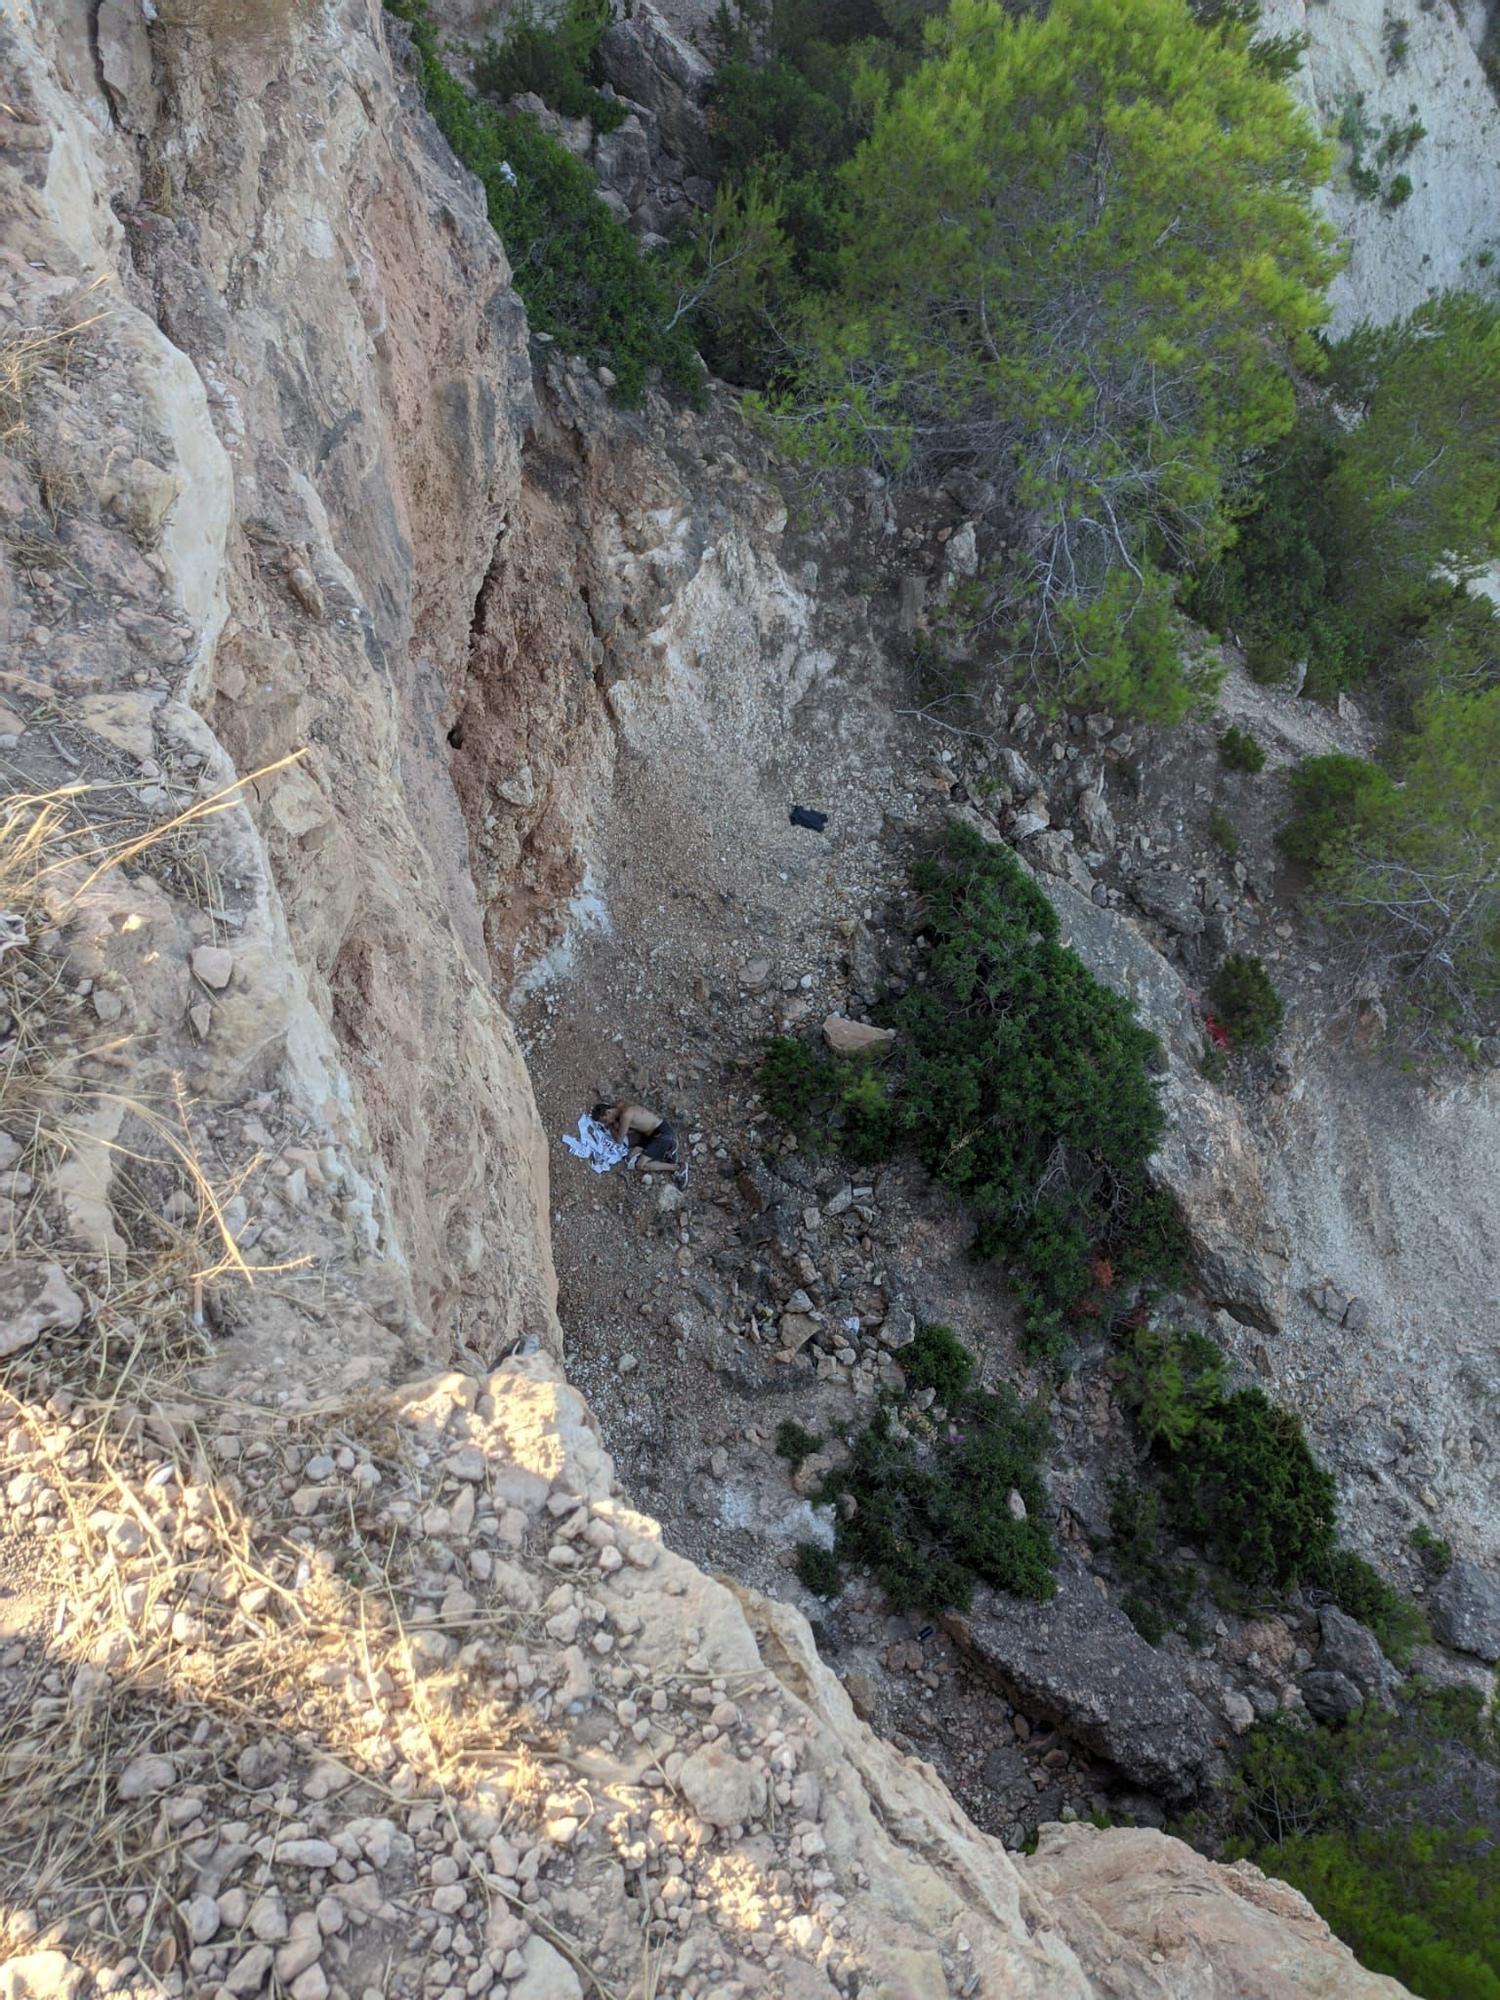 Herido grave un hombre al caer de una altura de 12 metros en Ibiza.